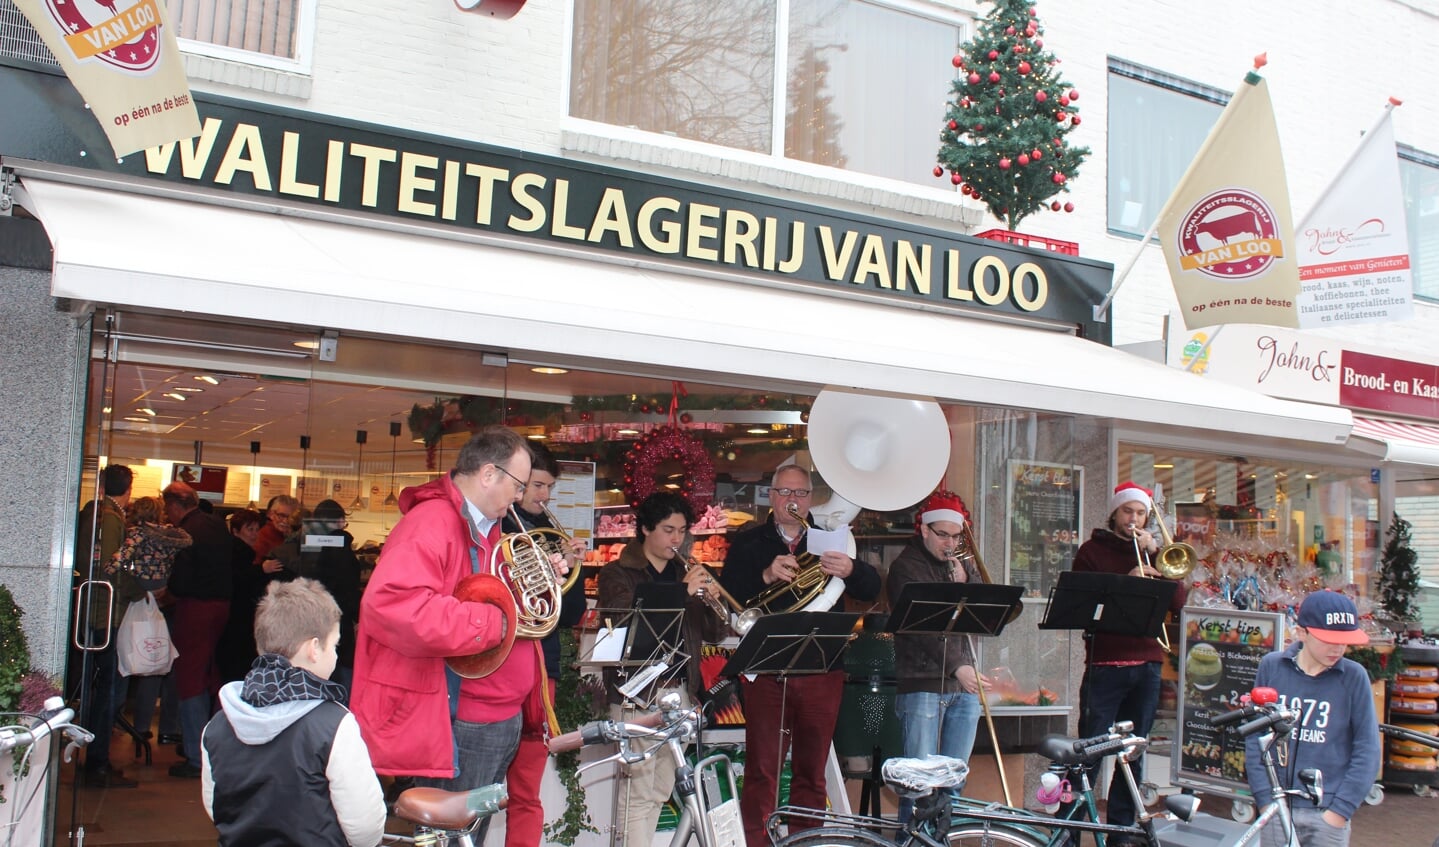 Het koperensemble van de Koninklijke Biltse Harmonie speelt kerstliederen voor de Slagerij.